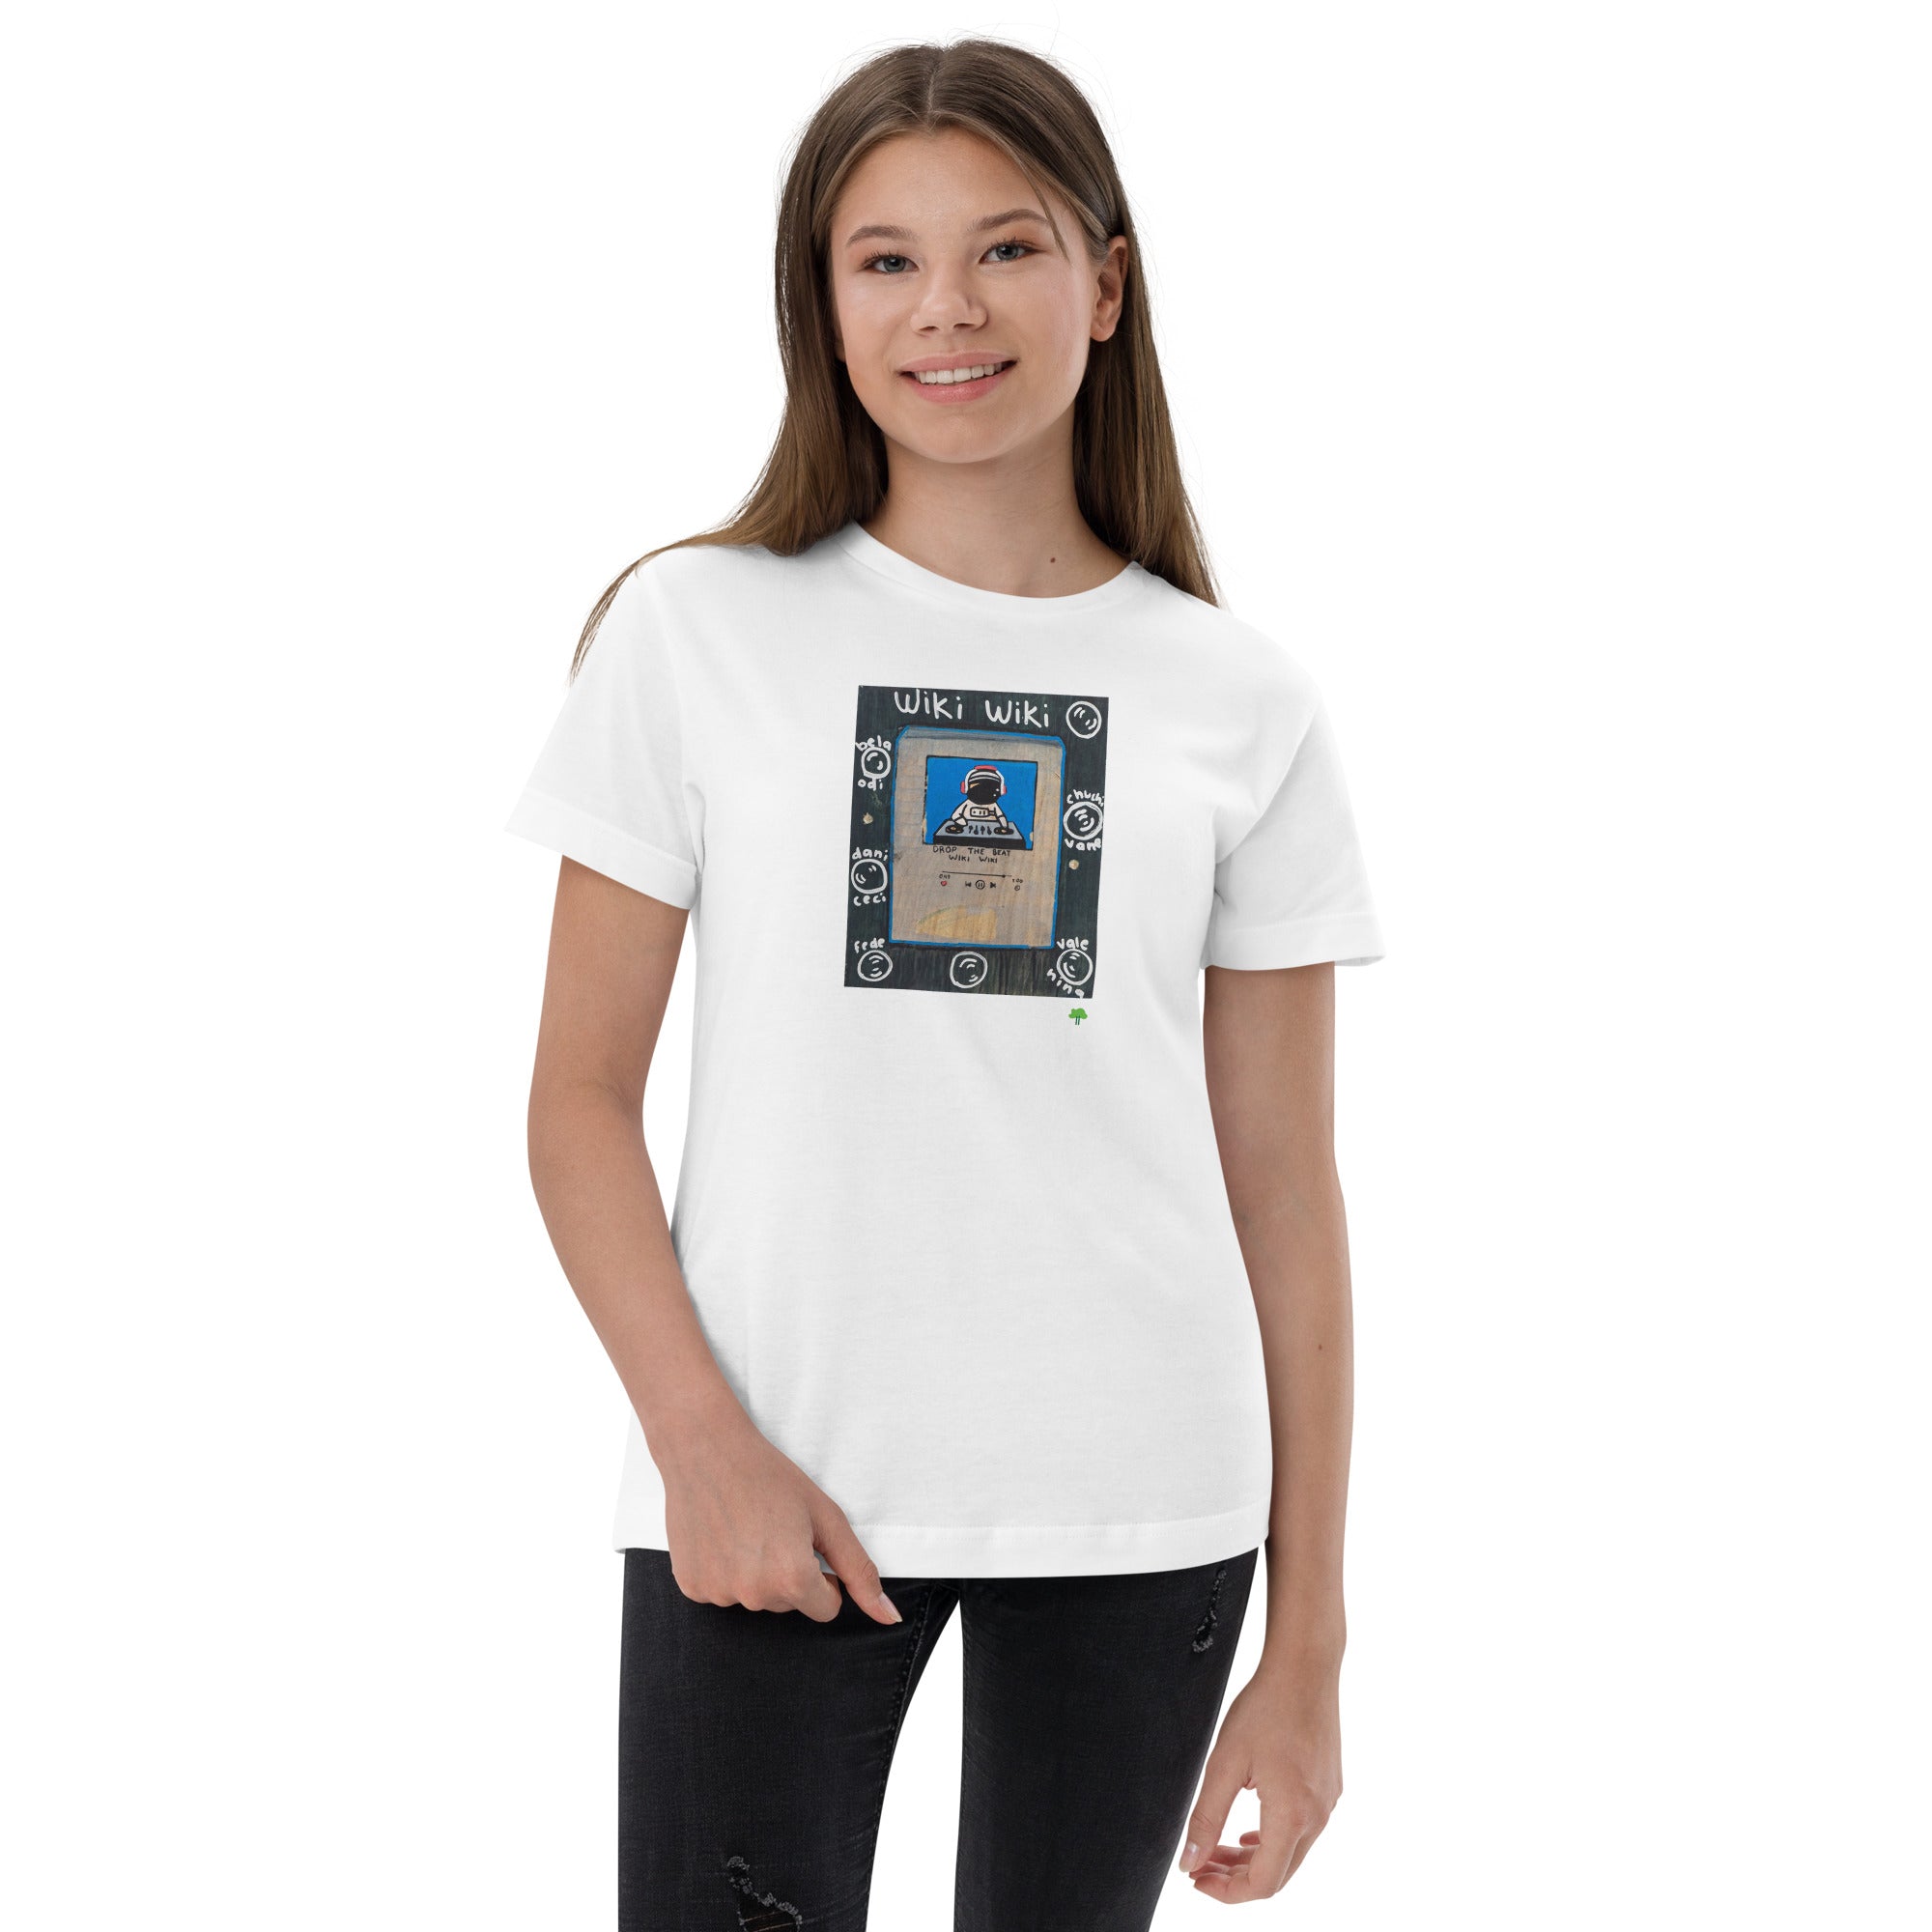 I Temp - Lago - K4 | Youth jersey t-shirt